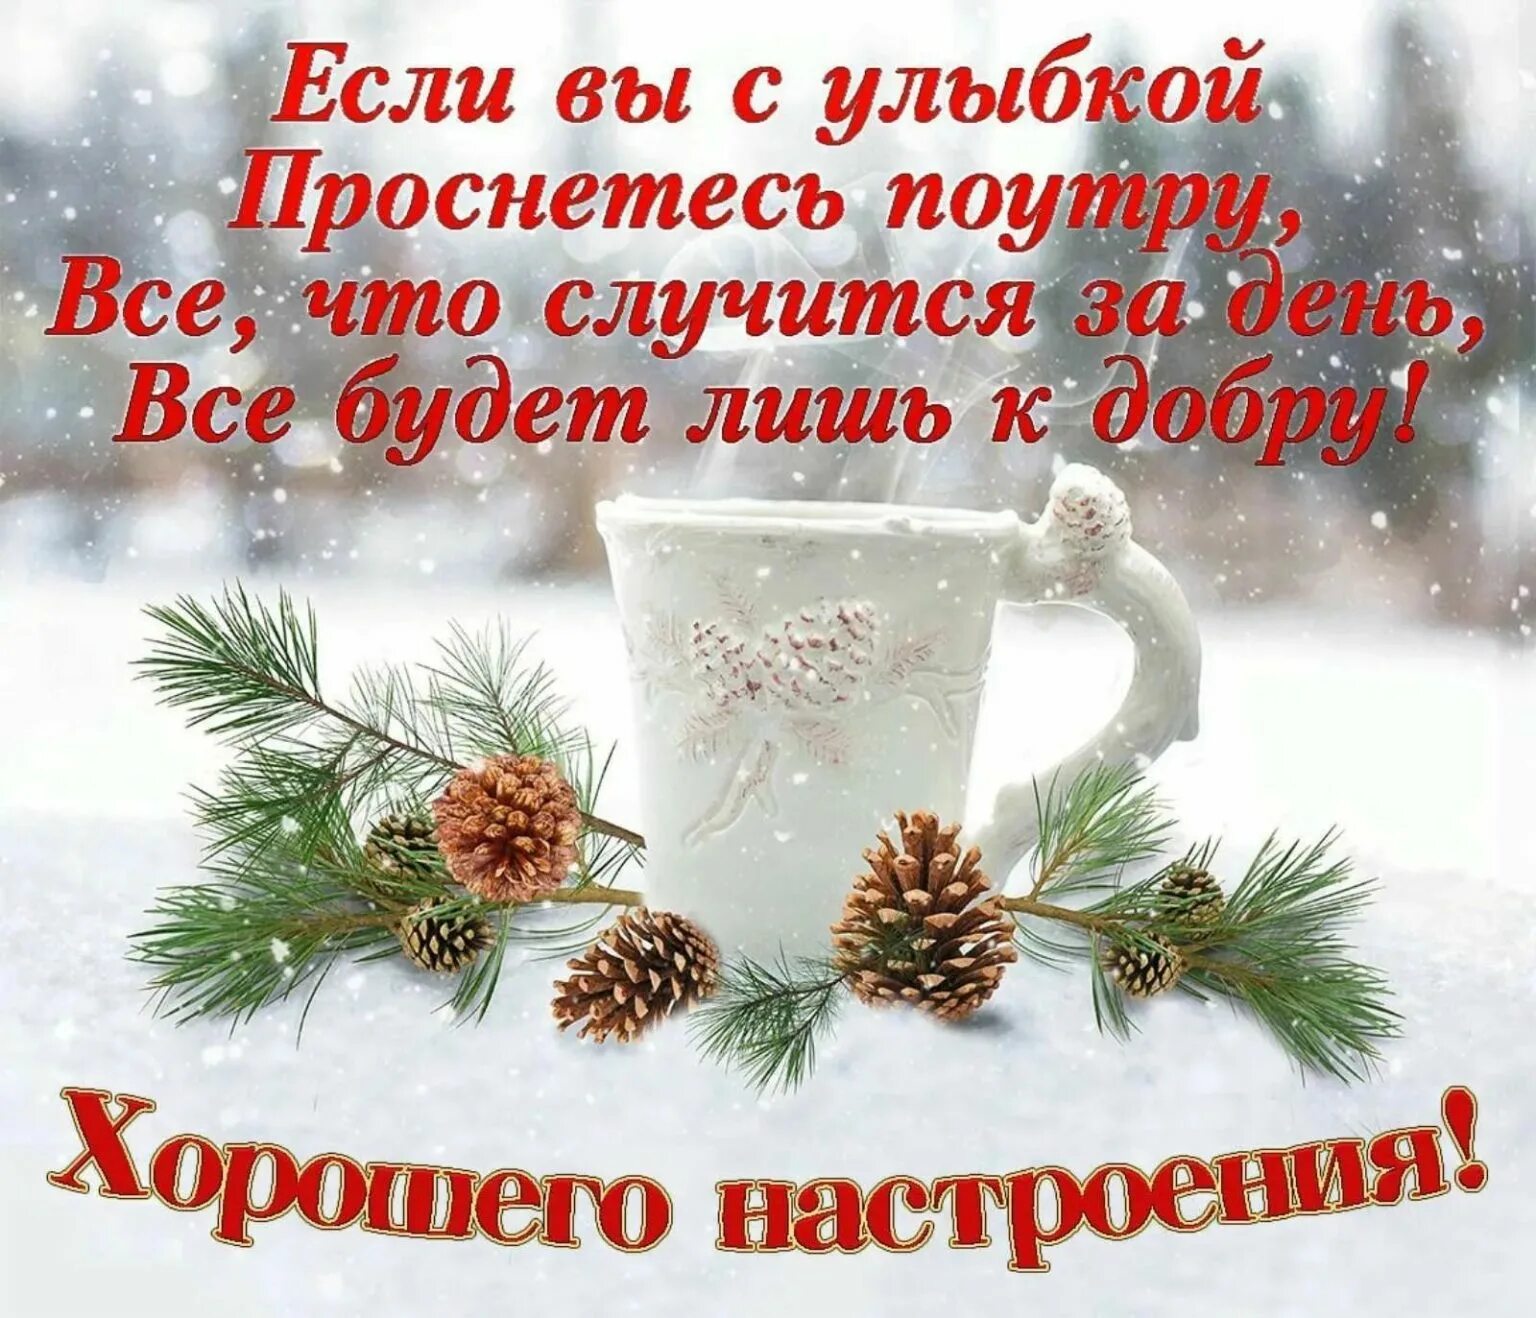 Зимние поздравления с добрым утром. Красивое поздравление с зимним утром. Доброго зимнего утра и хорошего дня. Пожелания доброго зимнего утра. Поздравление с добрым зимним утром